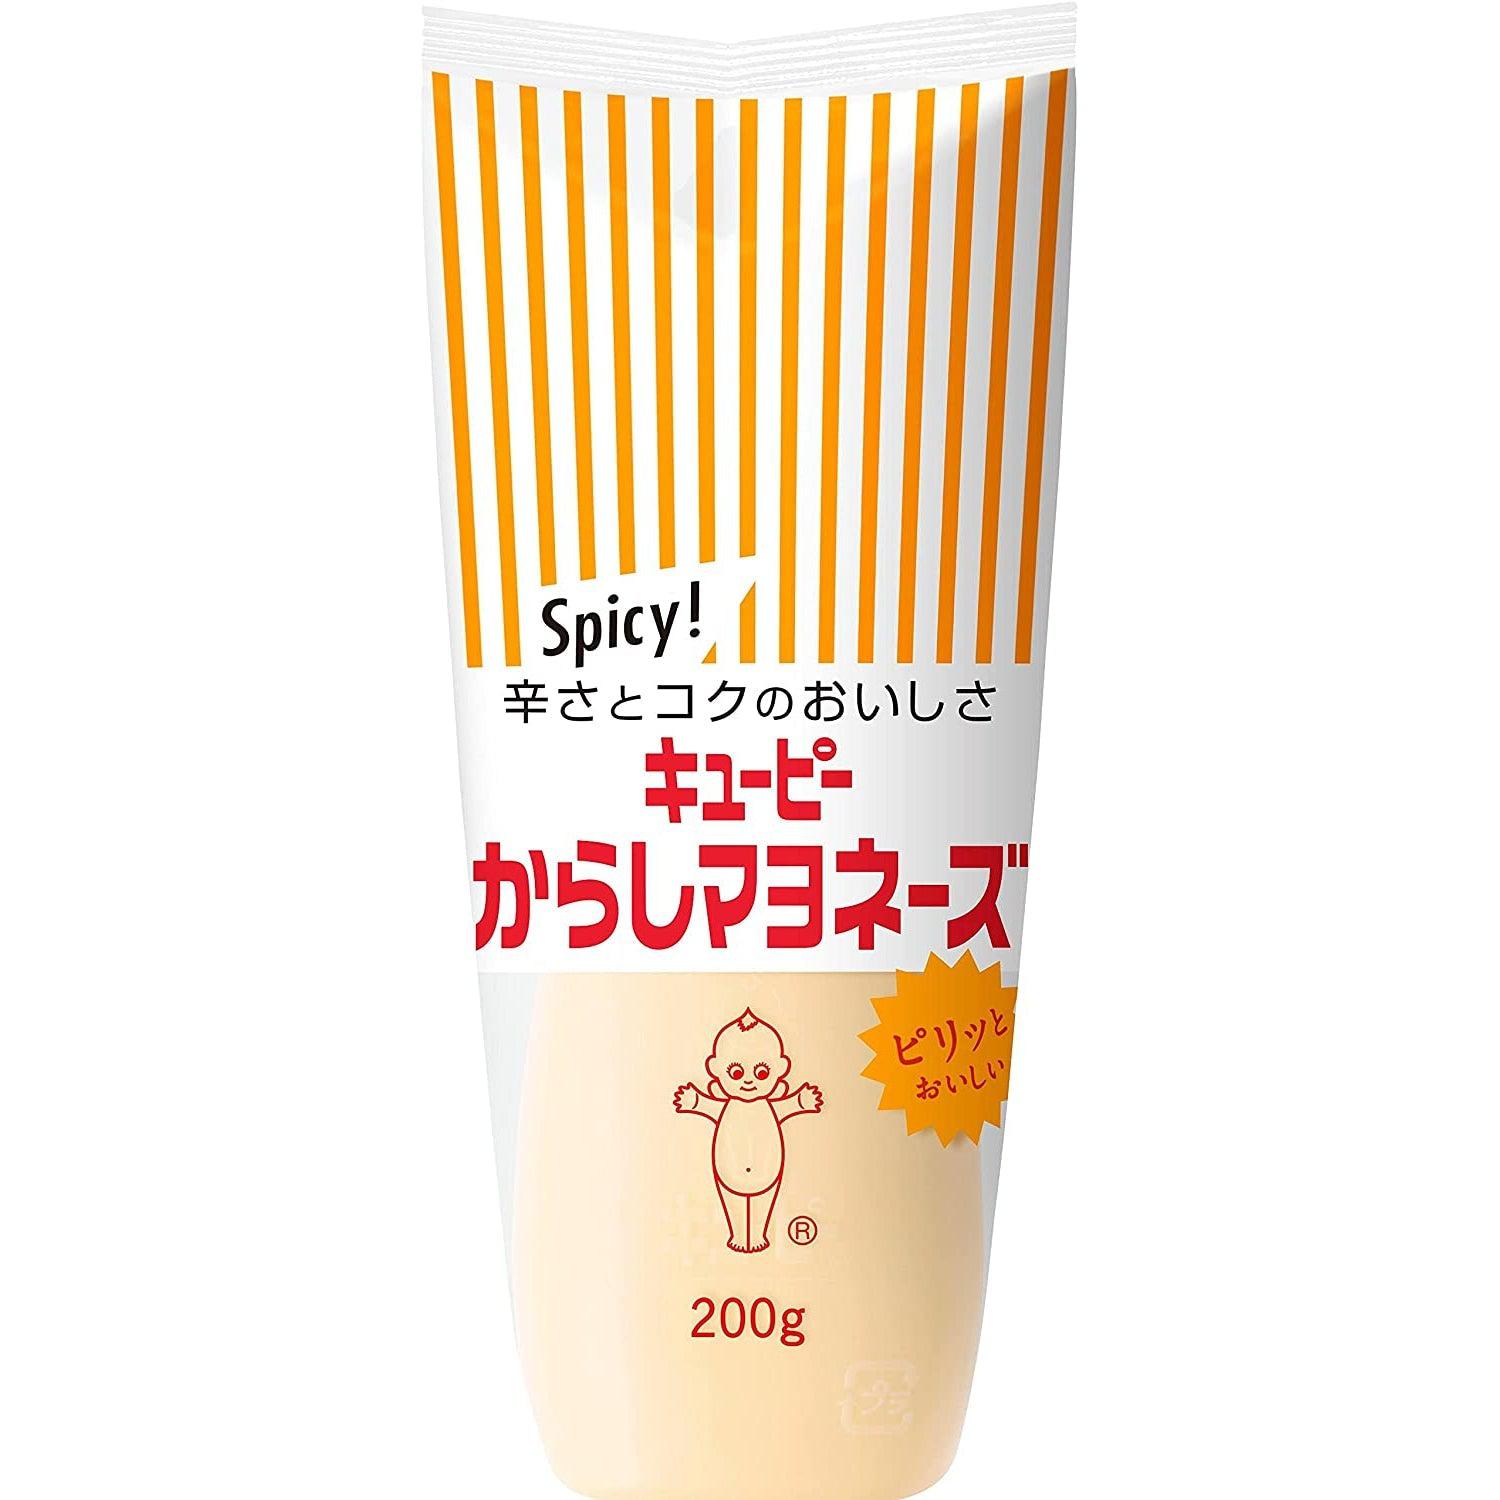 Kewpie Karashi Mayonnaise Japanese Spicy Mayo 200g, Japanese Taste